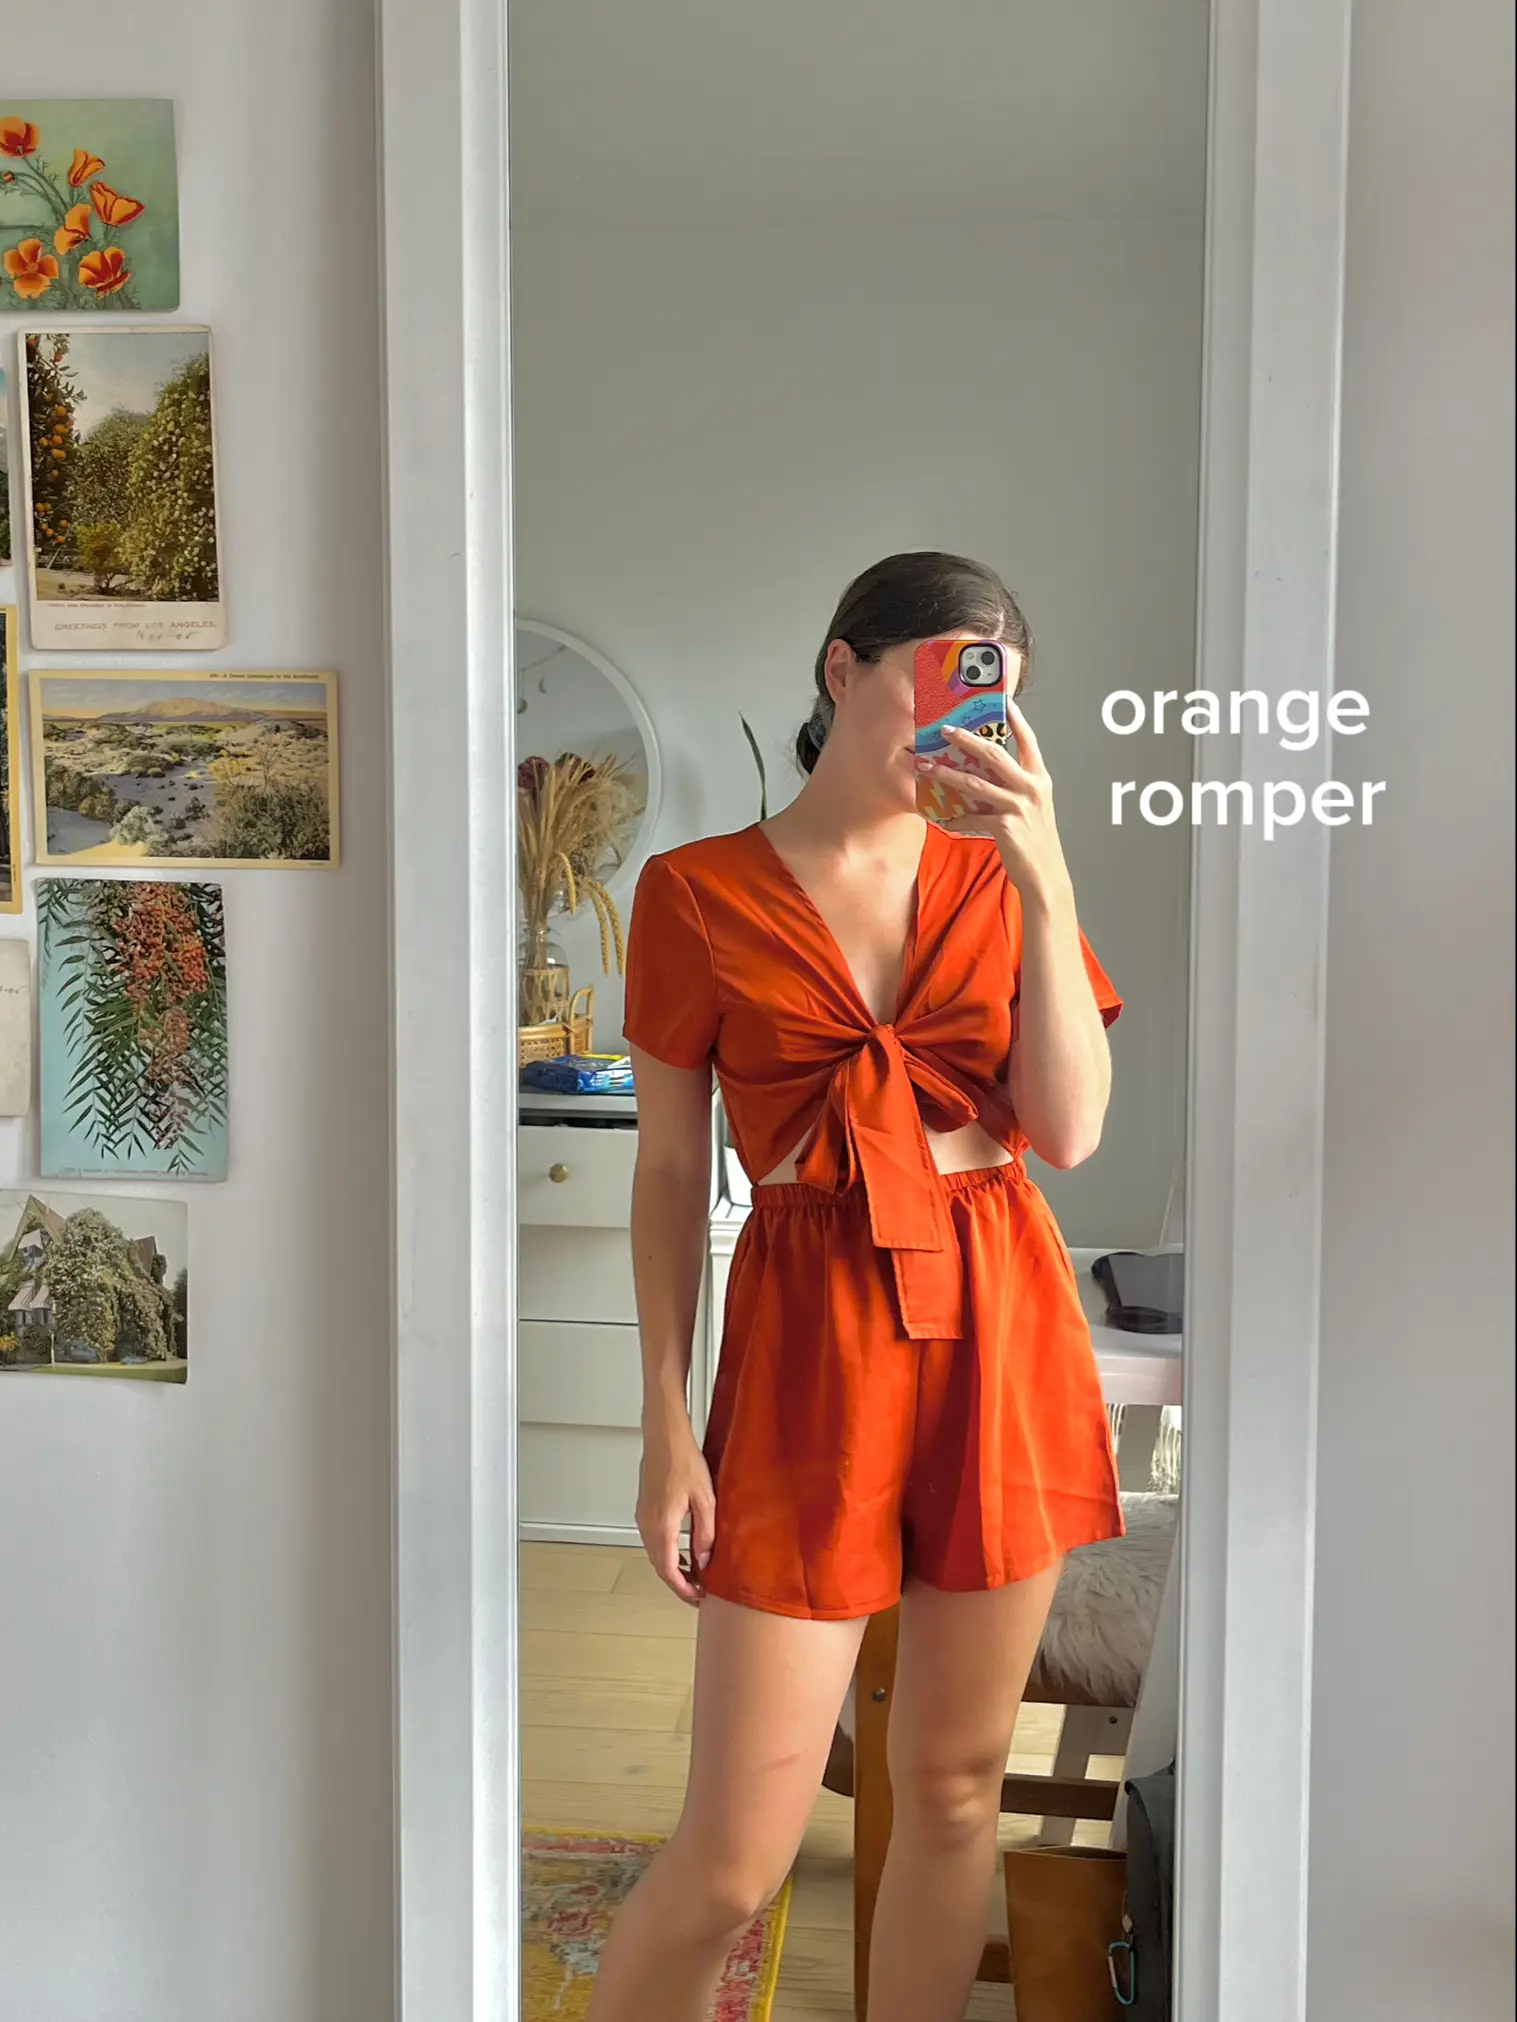  A woman in an orange romper is taking a selfie in a mirror.